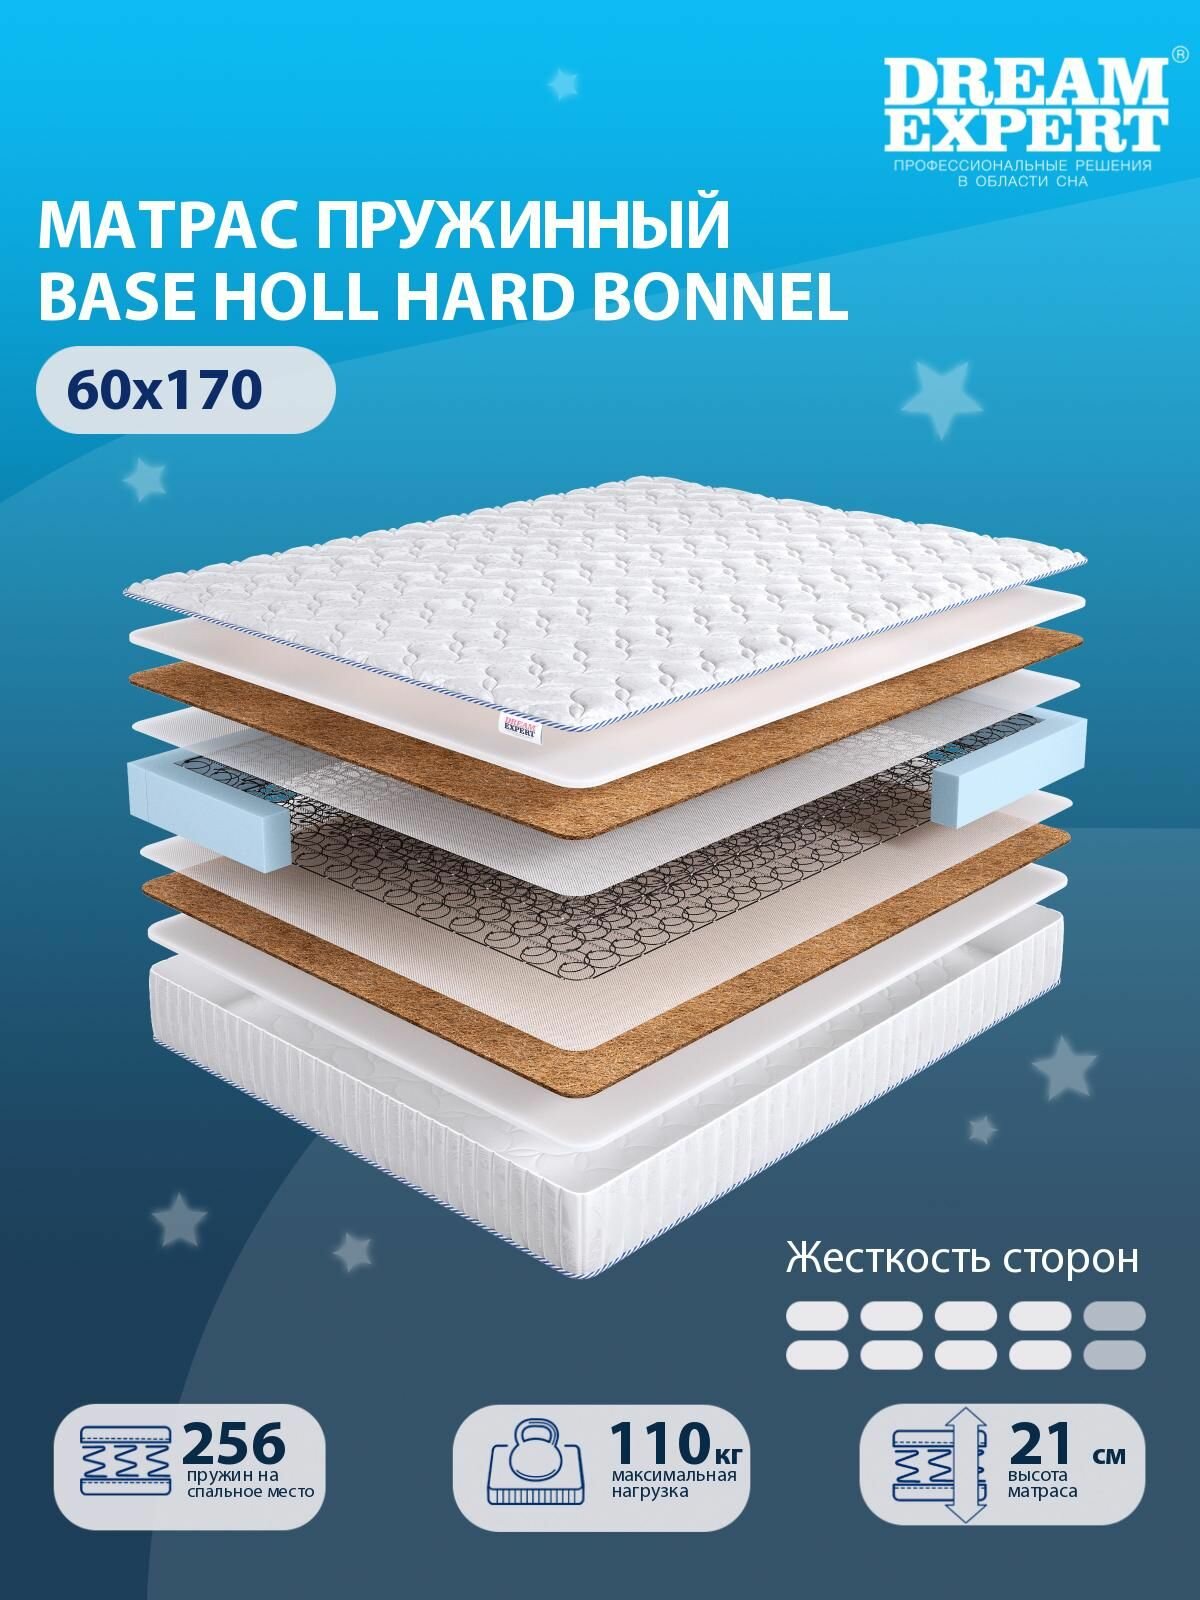 Матрас DreamExpert Base Holl Hard Bonnel выше средней жесткости, детский, зависимый пружинный блок, на кровать 60x170